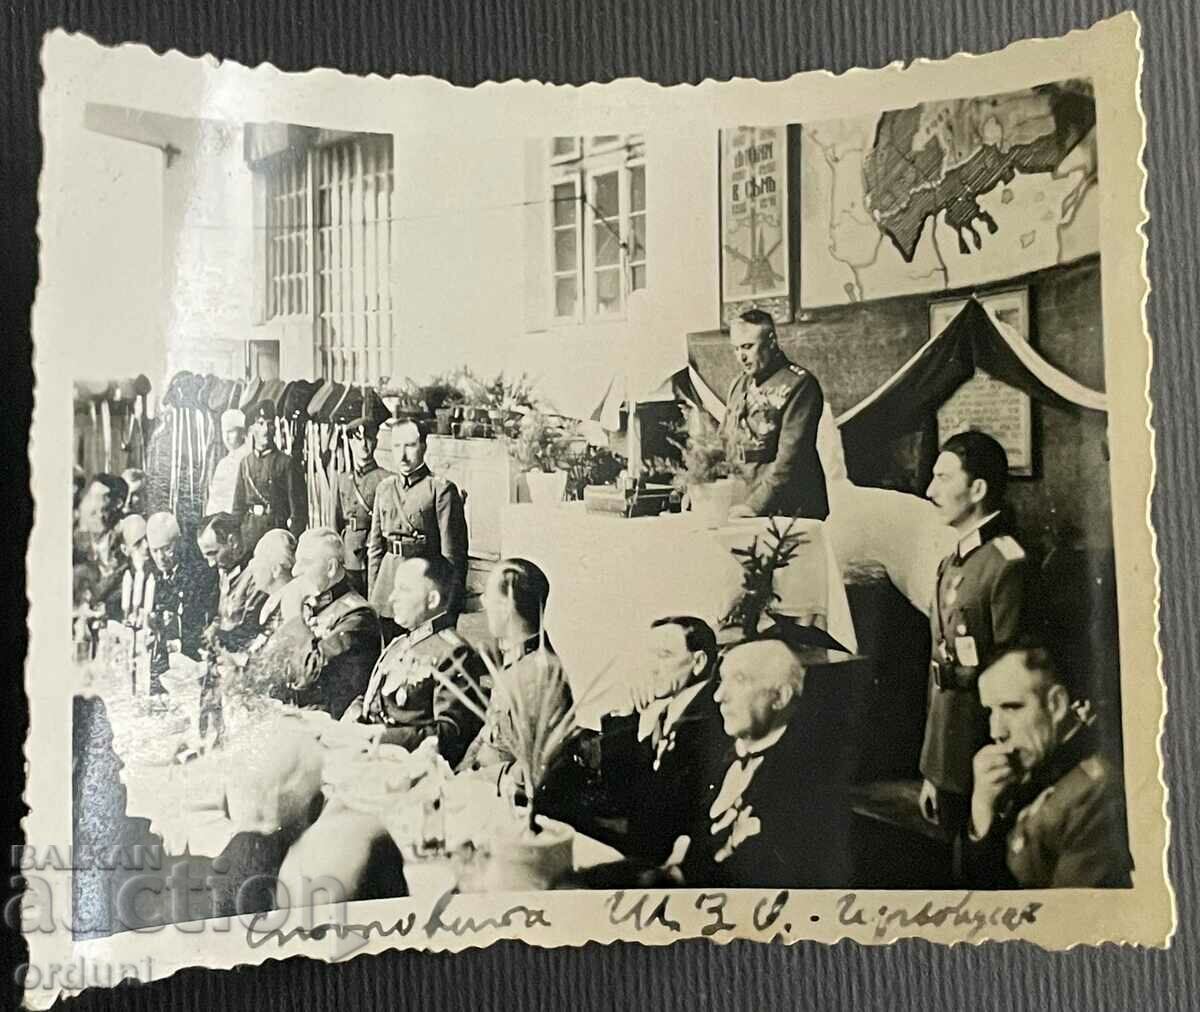 3493 Kingdom of Bulgaria generals banquet canteen ShZO 1943.